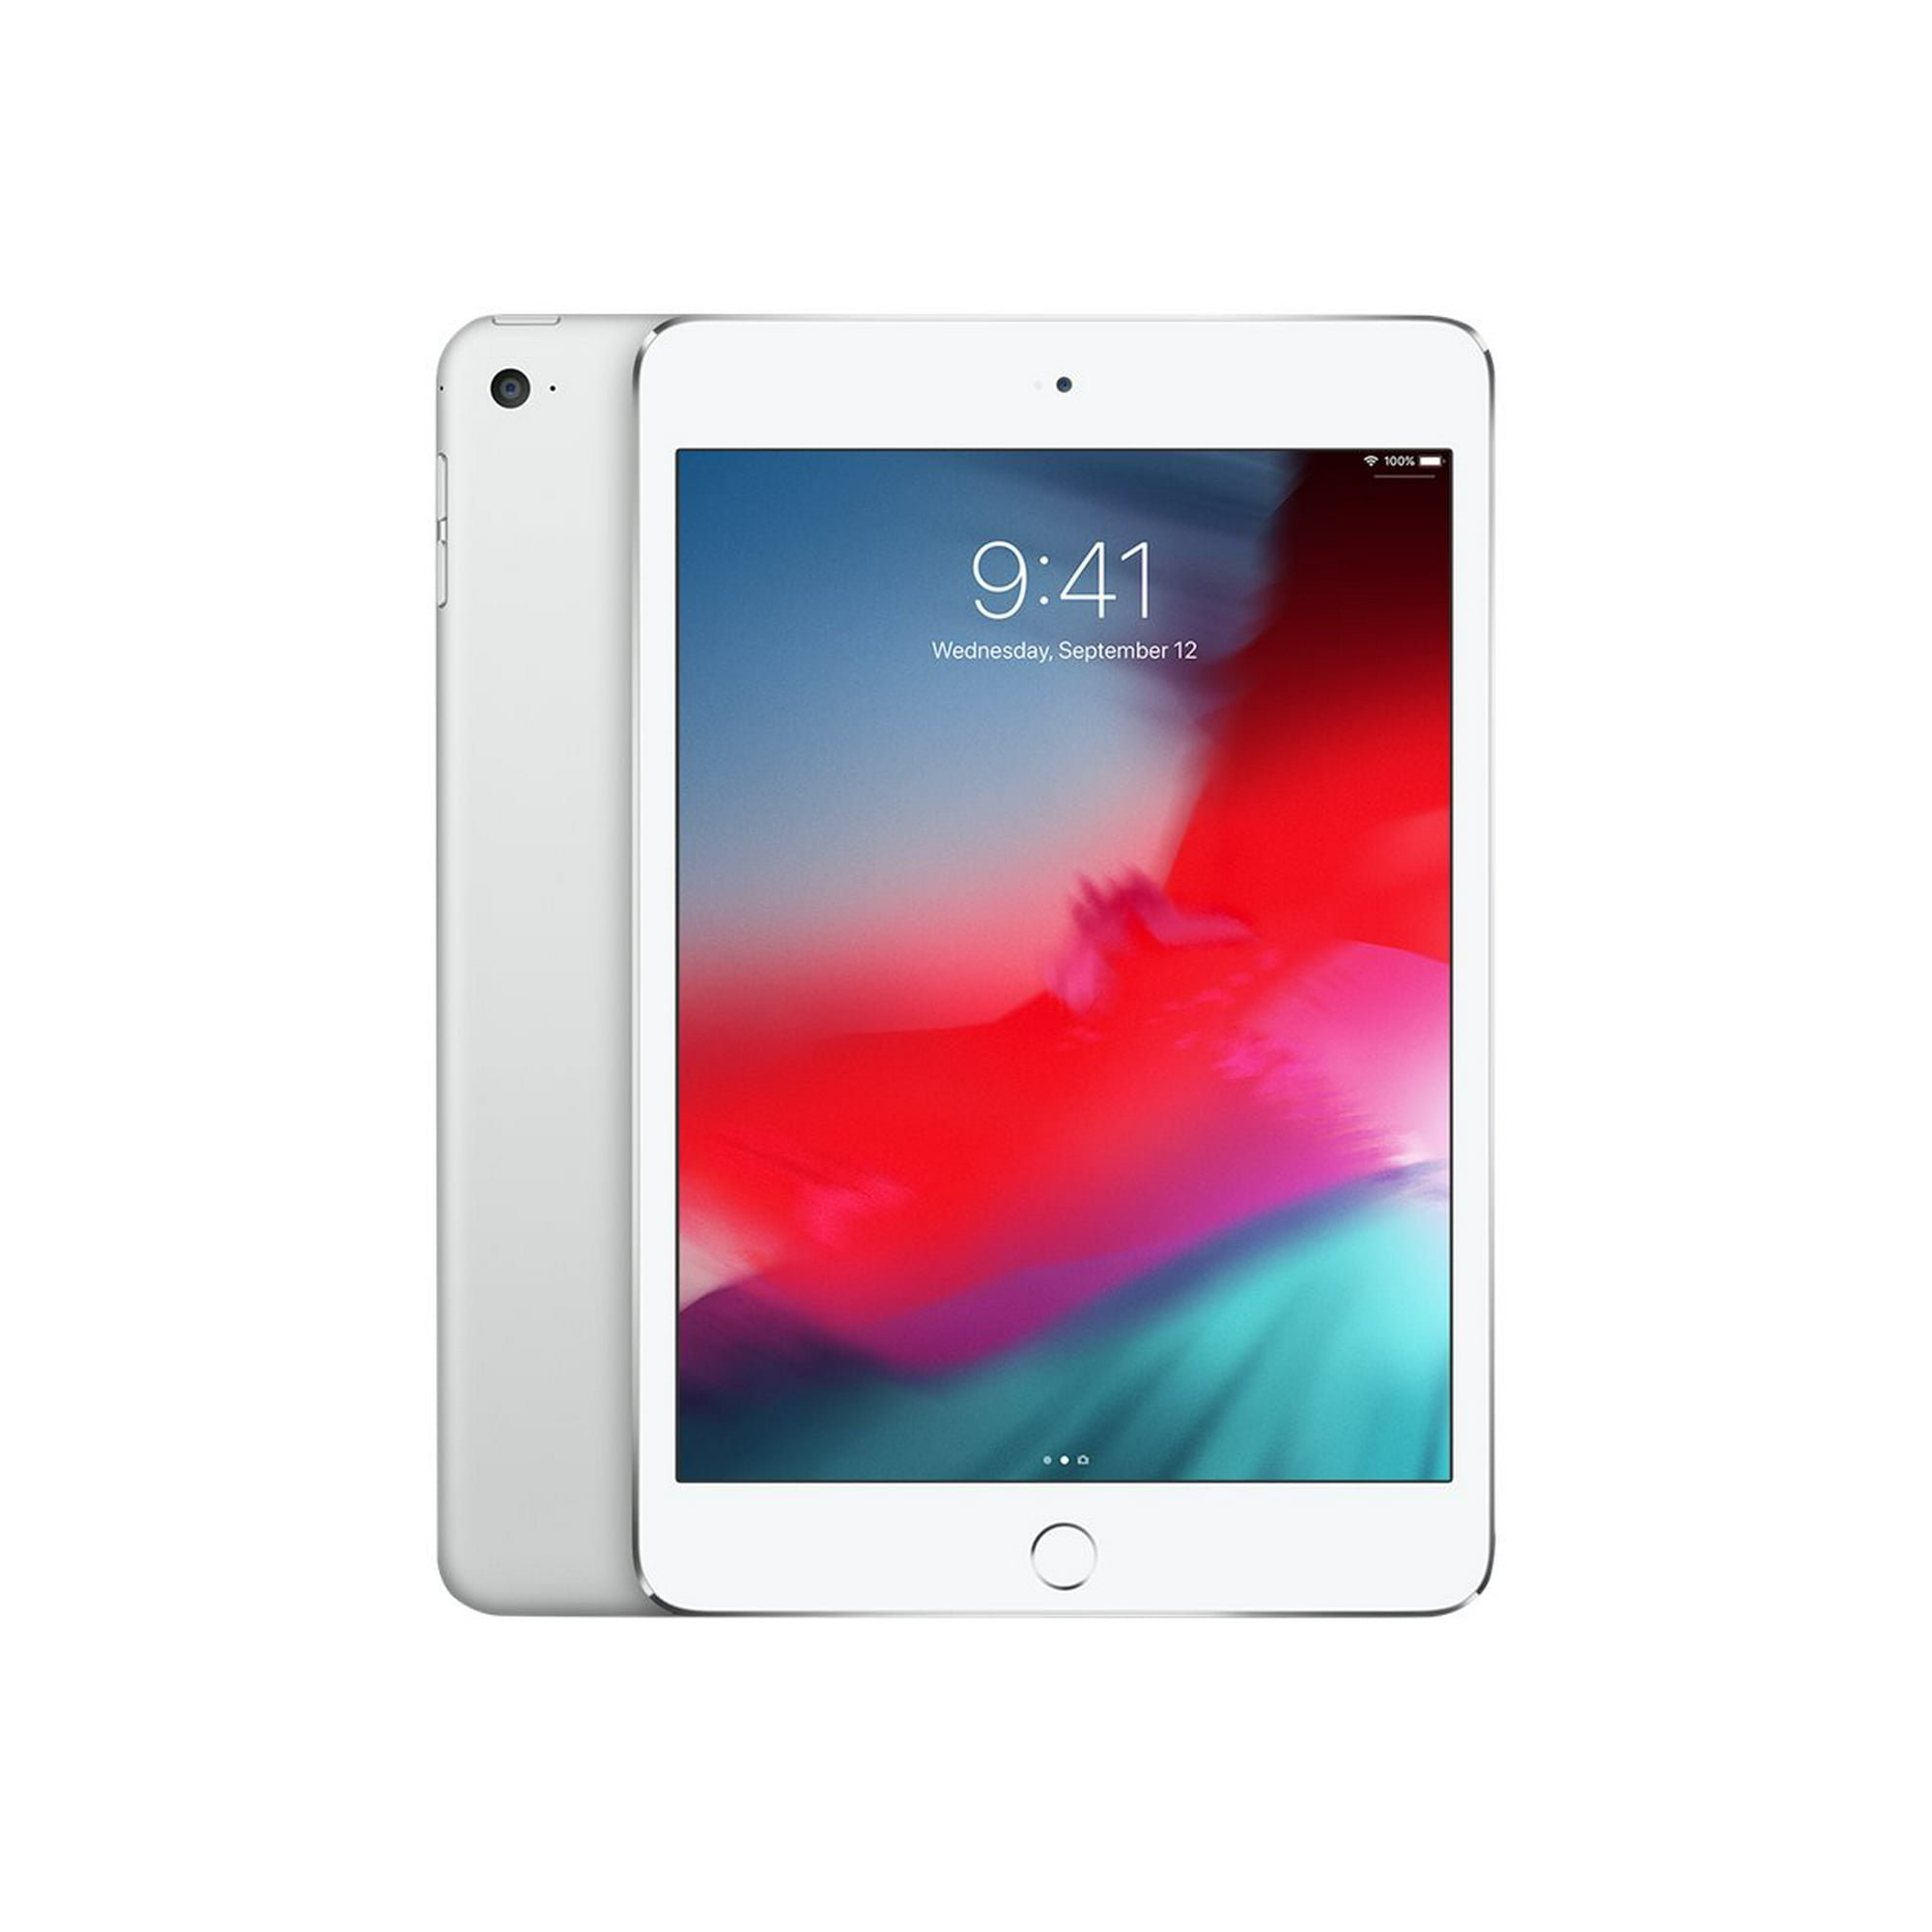 Apple iPad mini 4 Wi-Fi - 4th generation - tablet - 128 GB - 7.9 